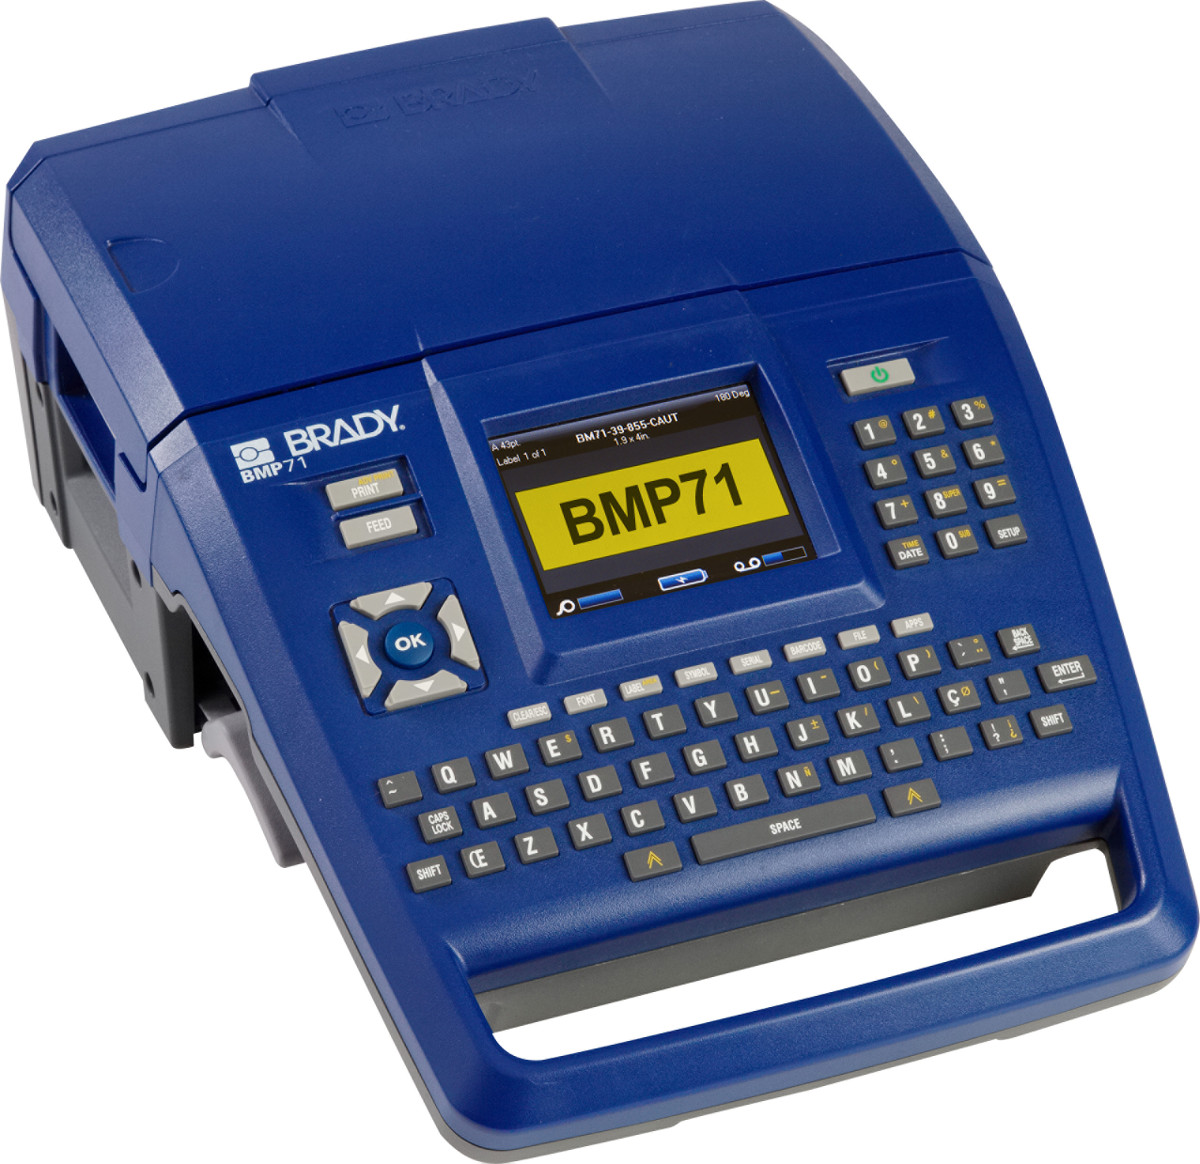 La stampante per etichette BMP71 è la stampante portatile per eccellenza